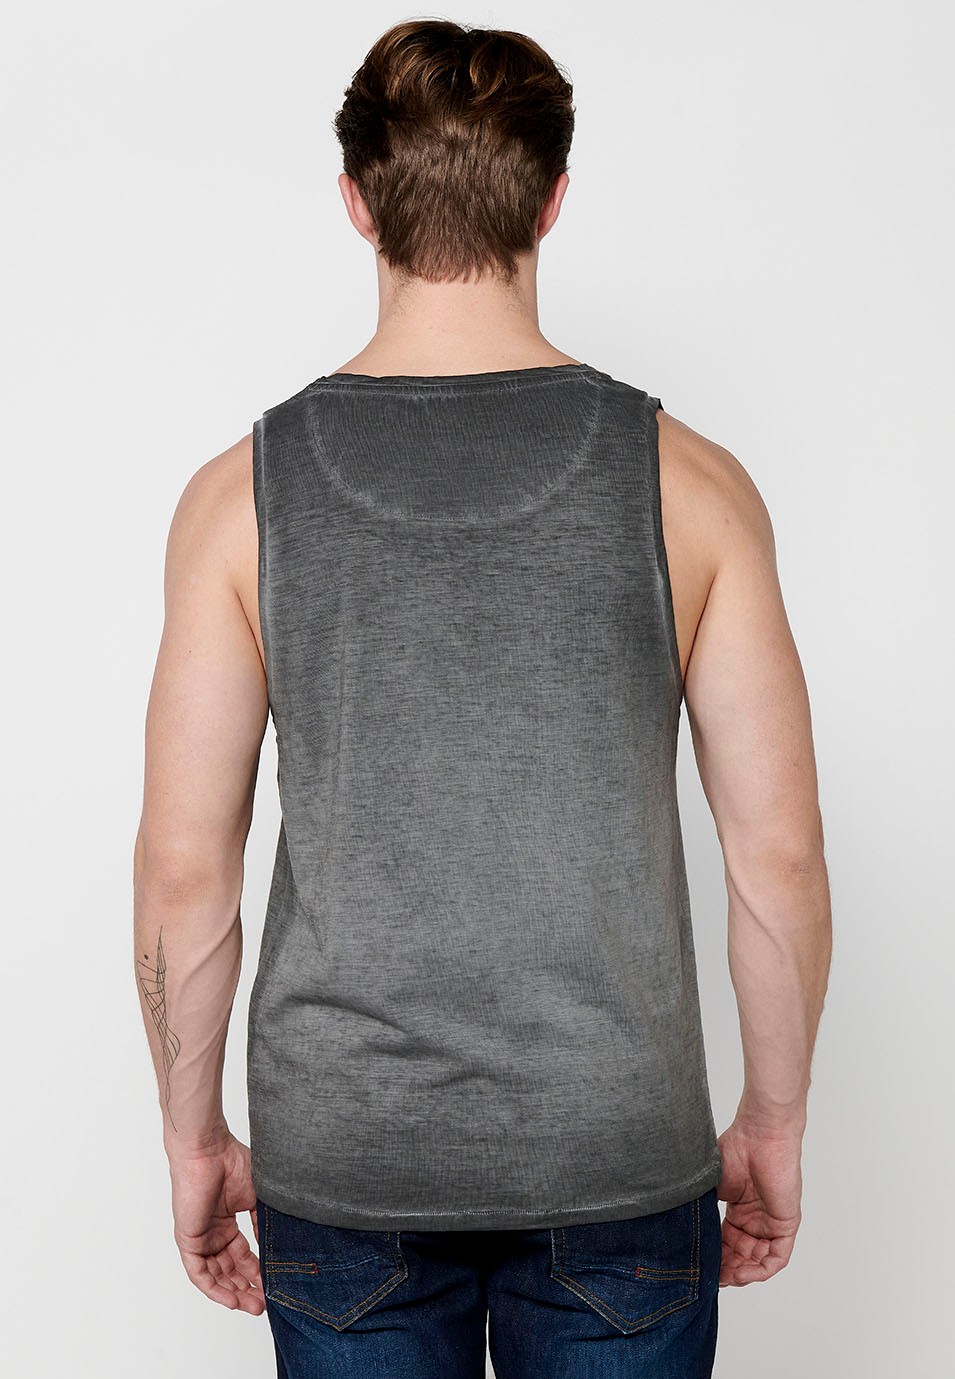 Camiseta de tirantes de algodon, con estampado frontal, color gris para hombre